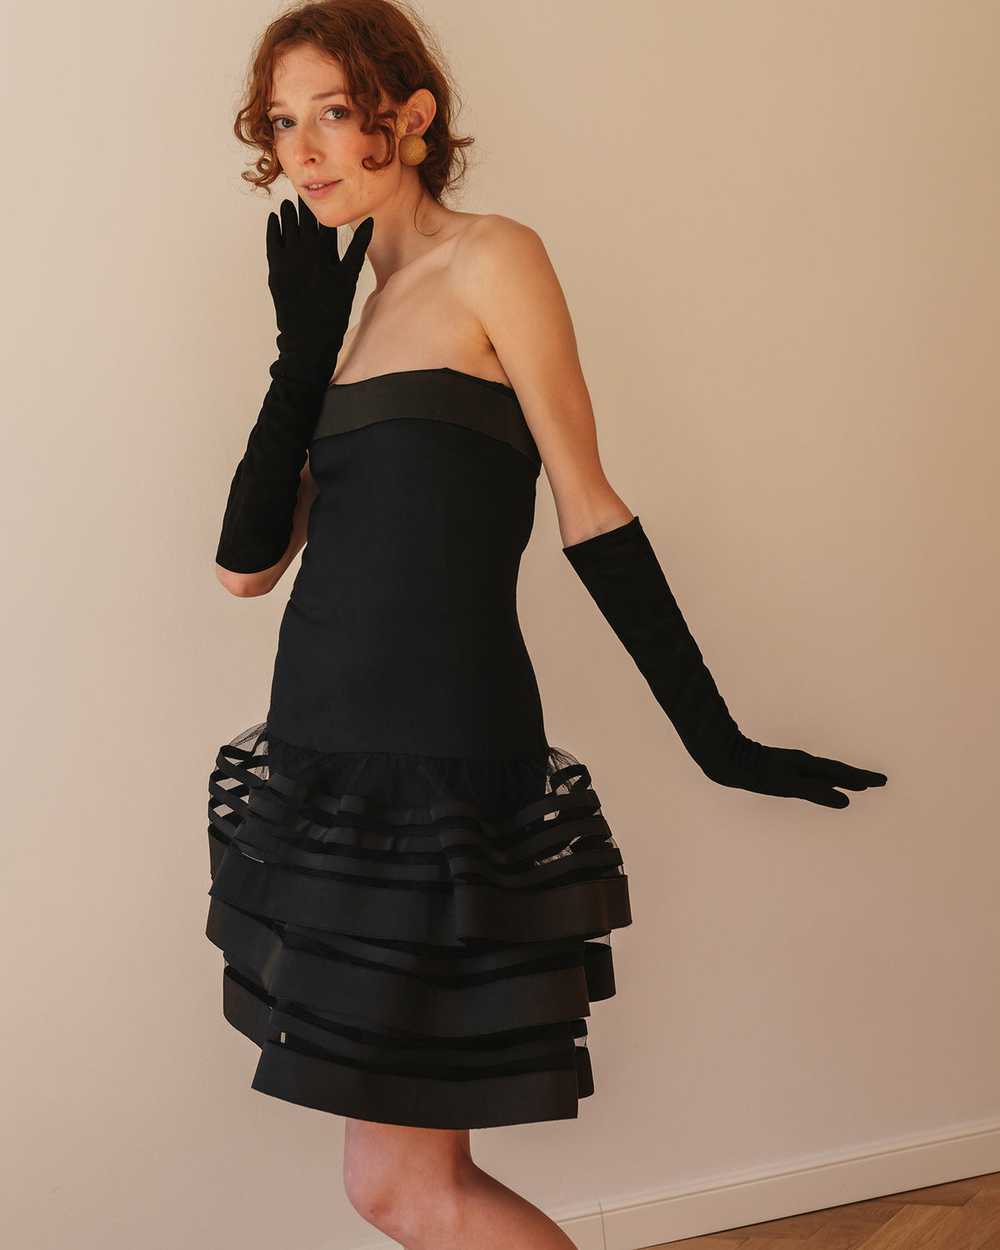 Nina Ricci Haute Couture dress - image 1